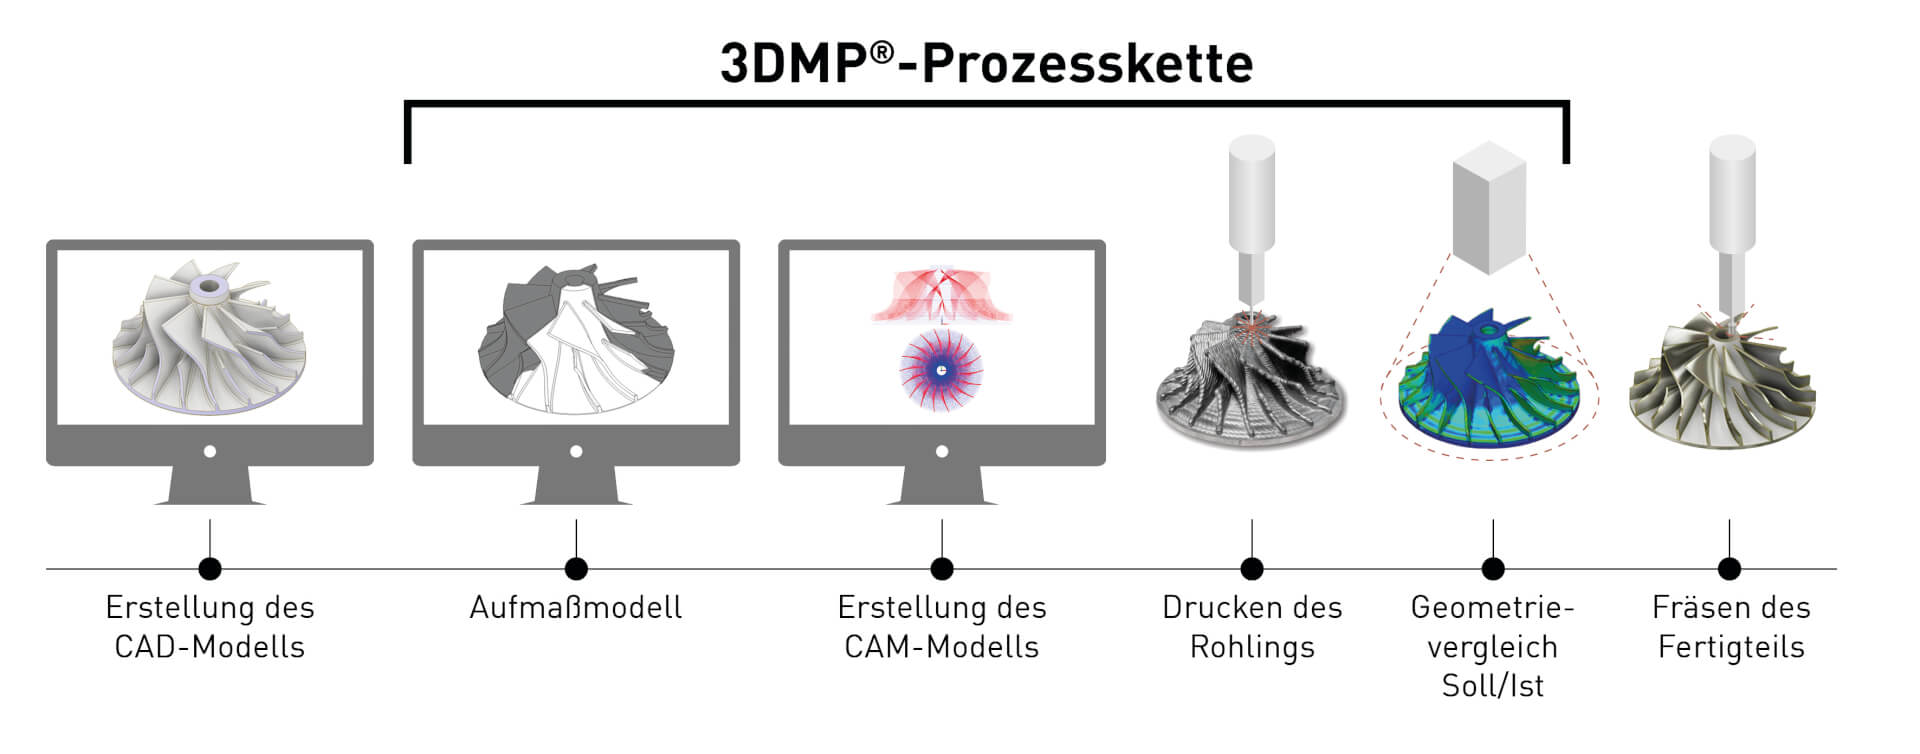 3DMP Prozesskette